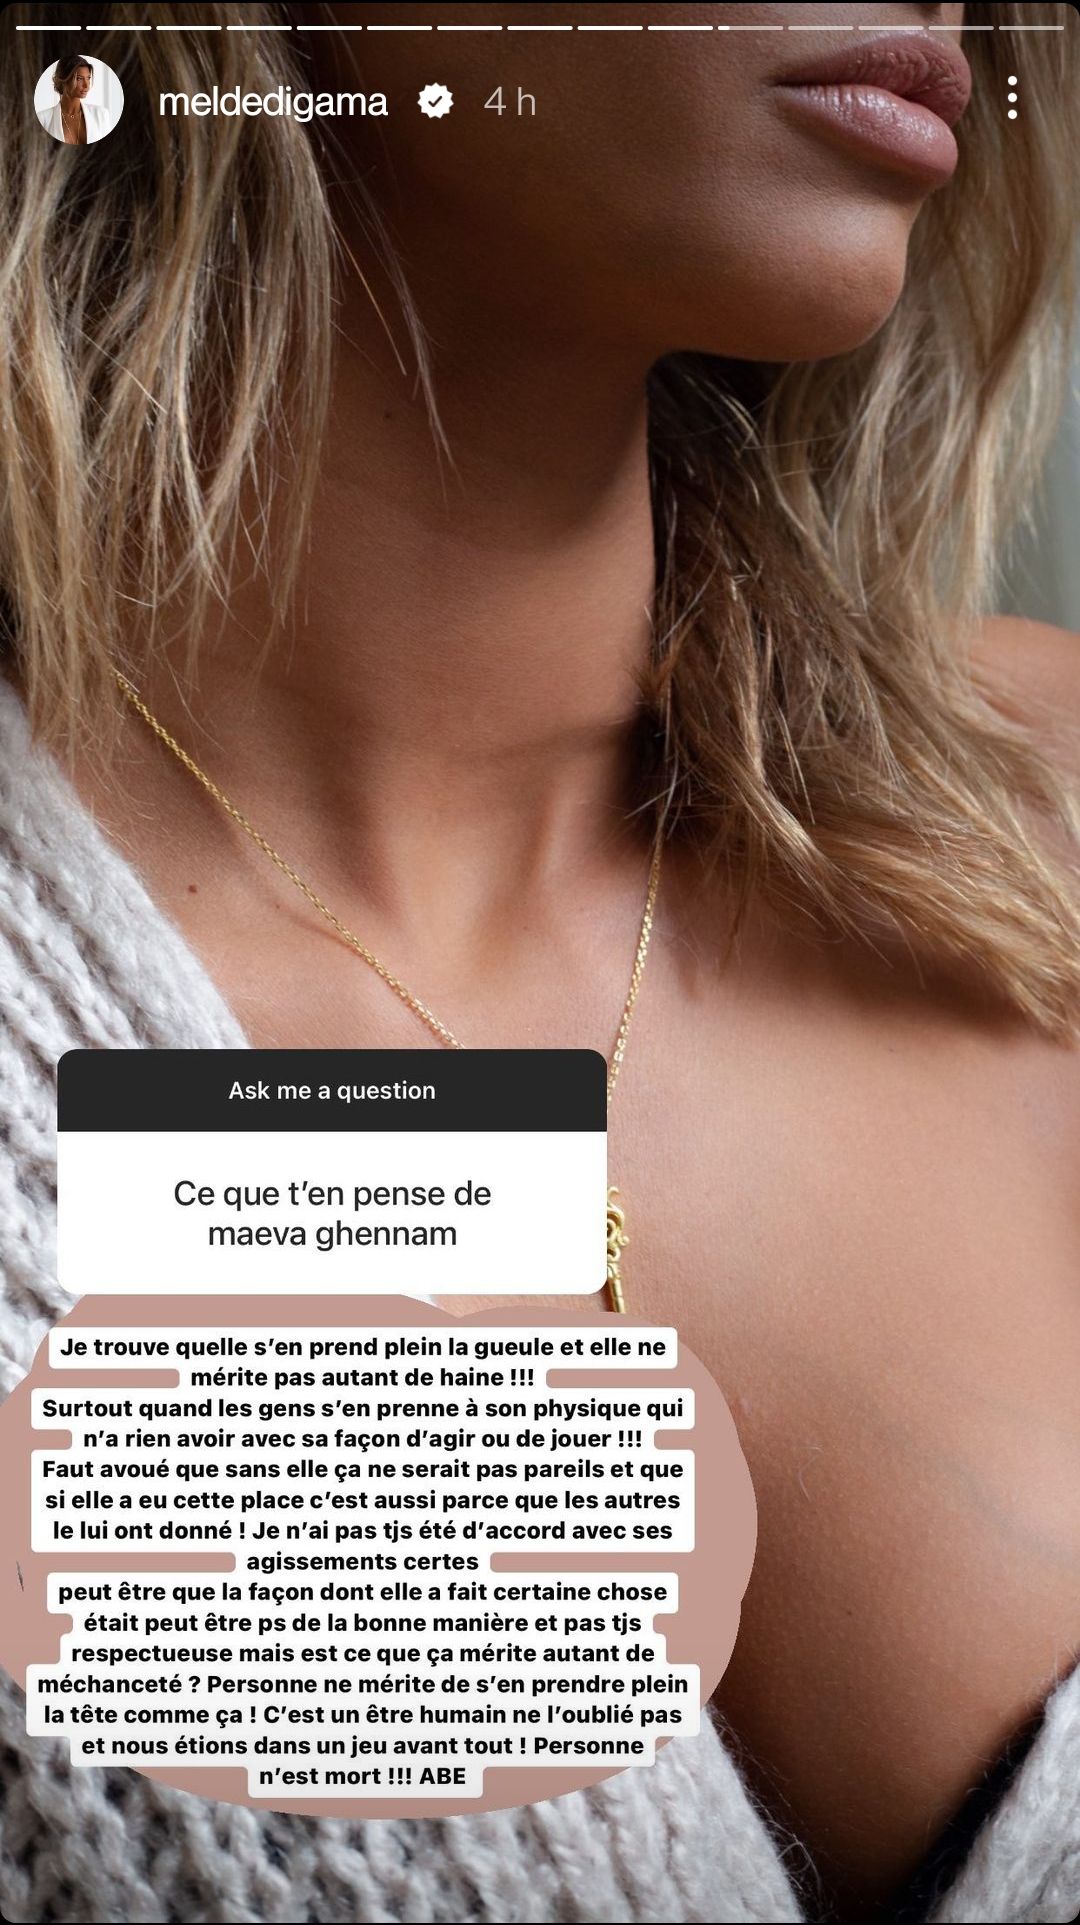  Mélanie Dedigama défend Maeva Ghennam @Instagram